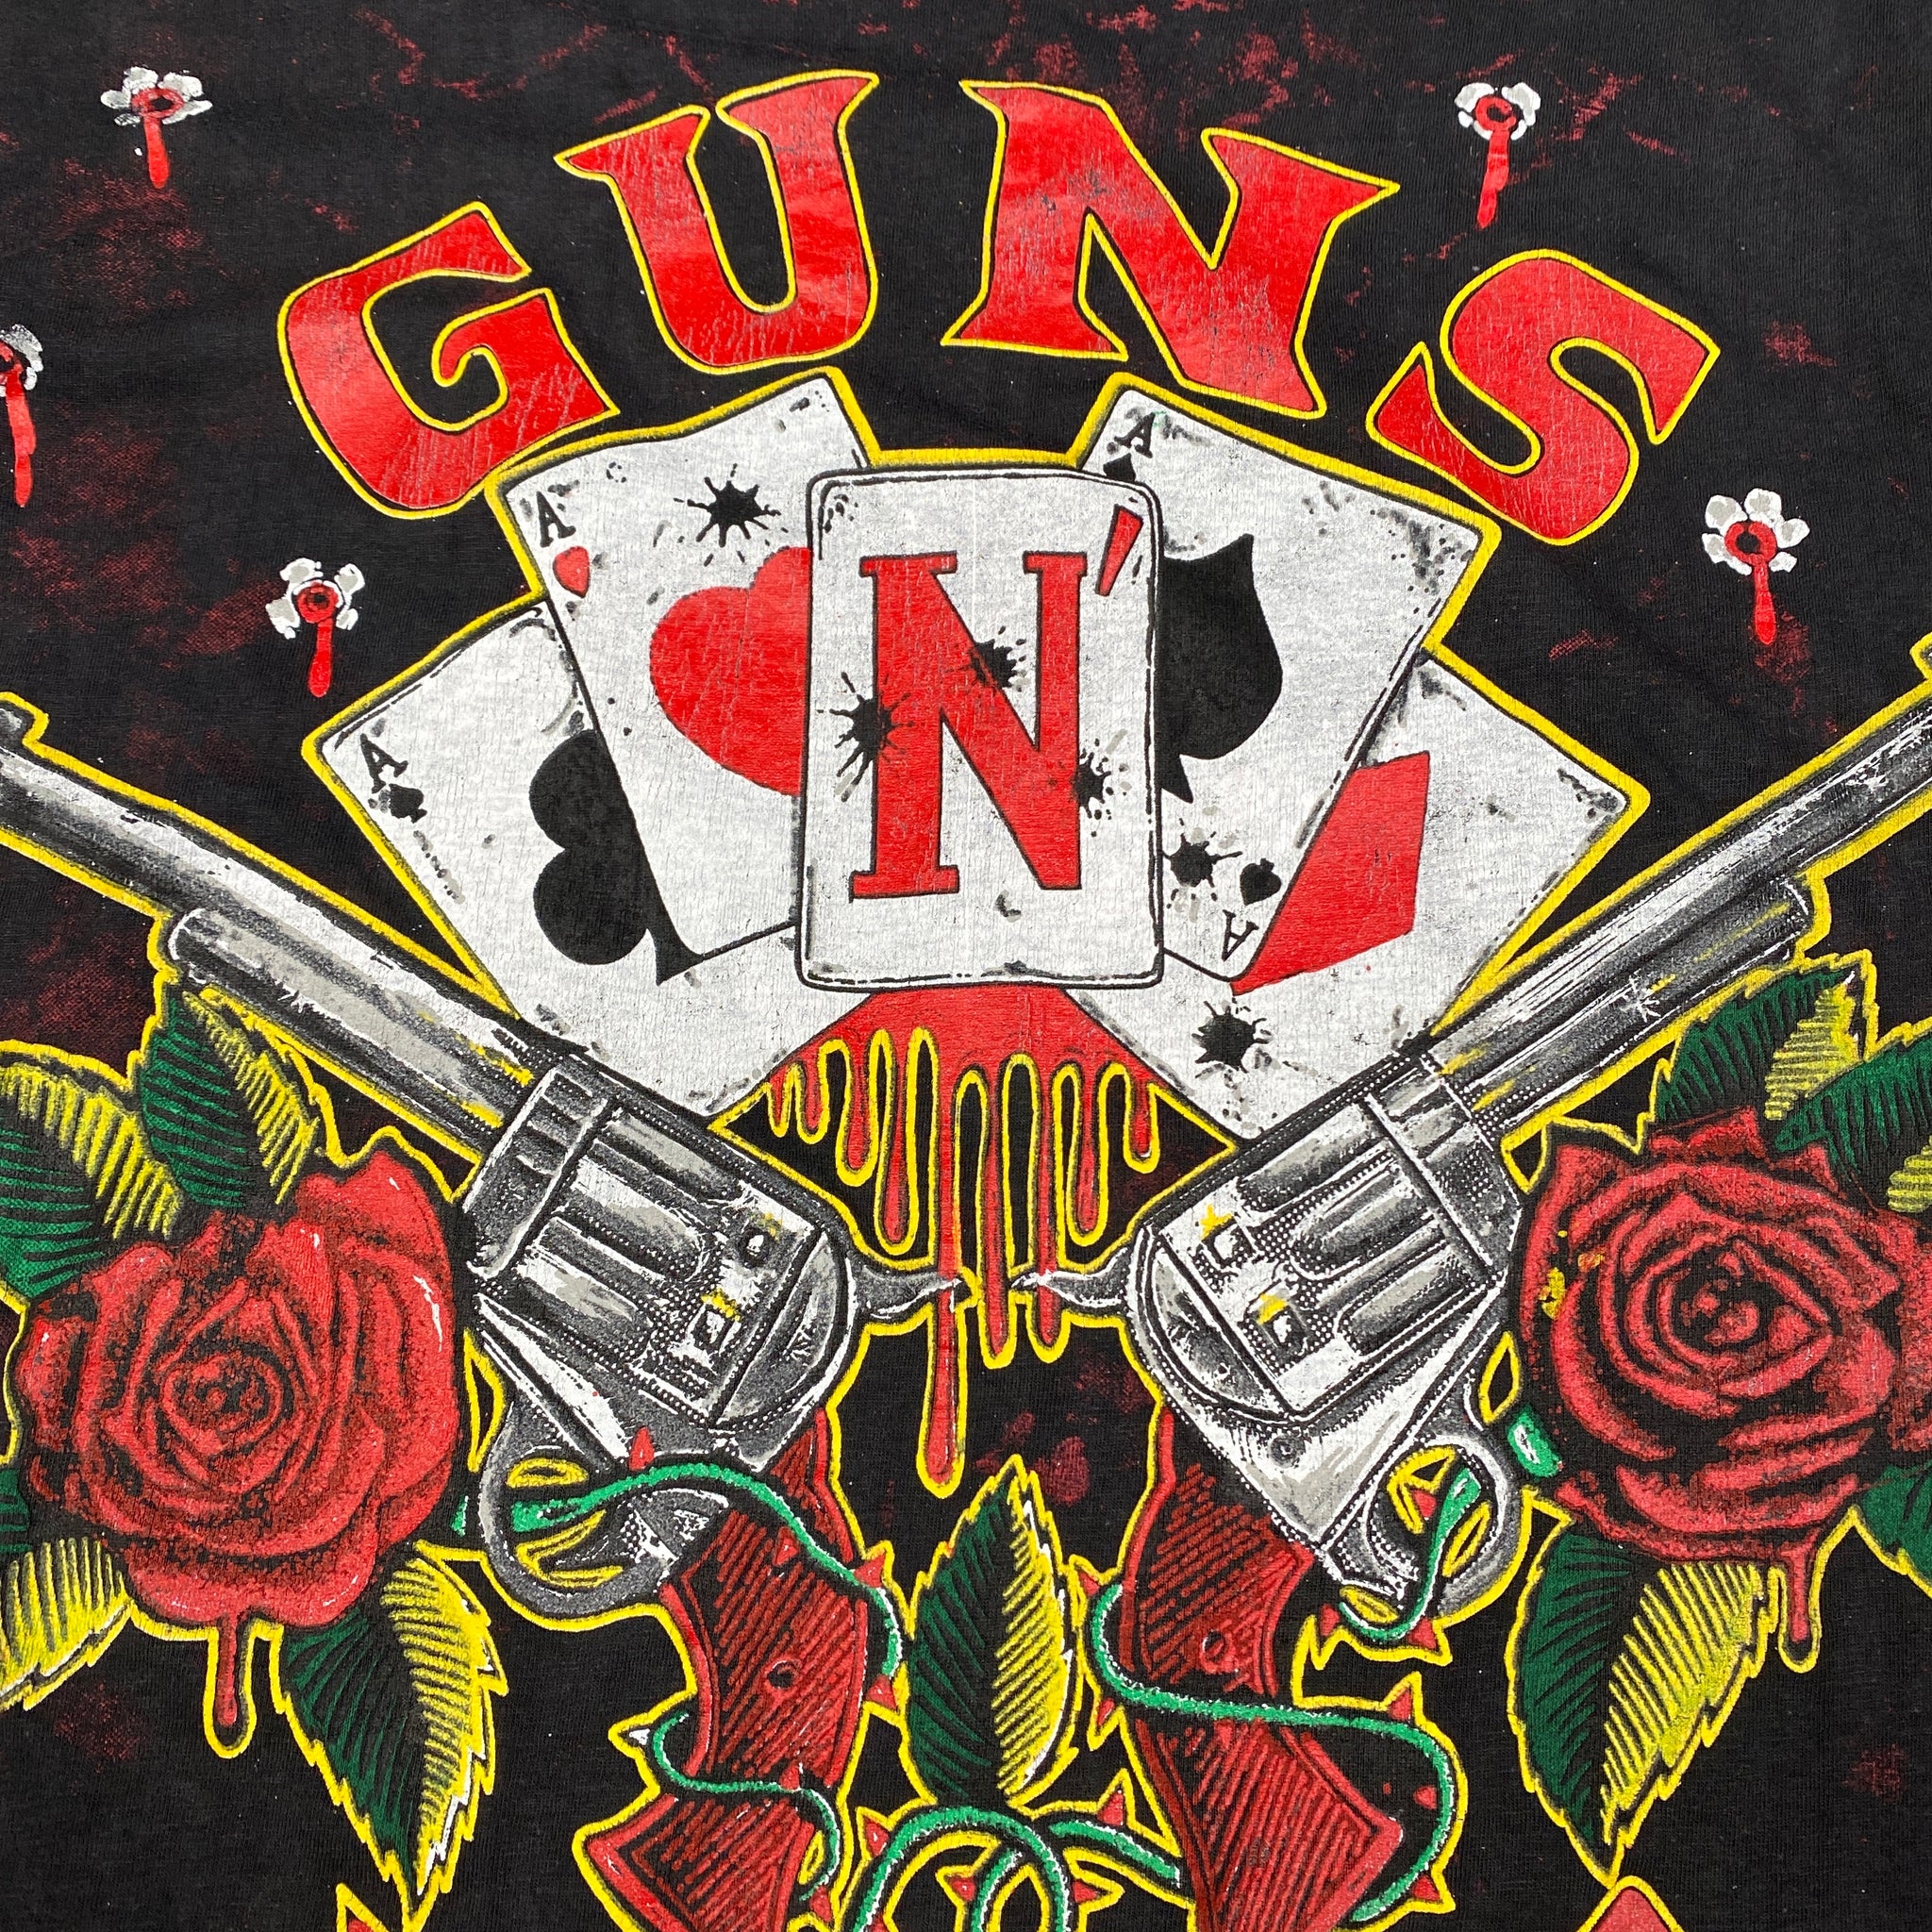 GUNS N‘ ROSES | ‘Cards’ | 90s | M